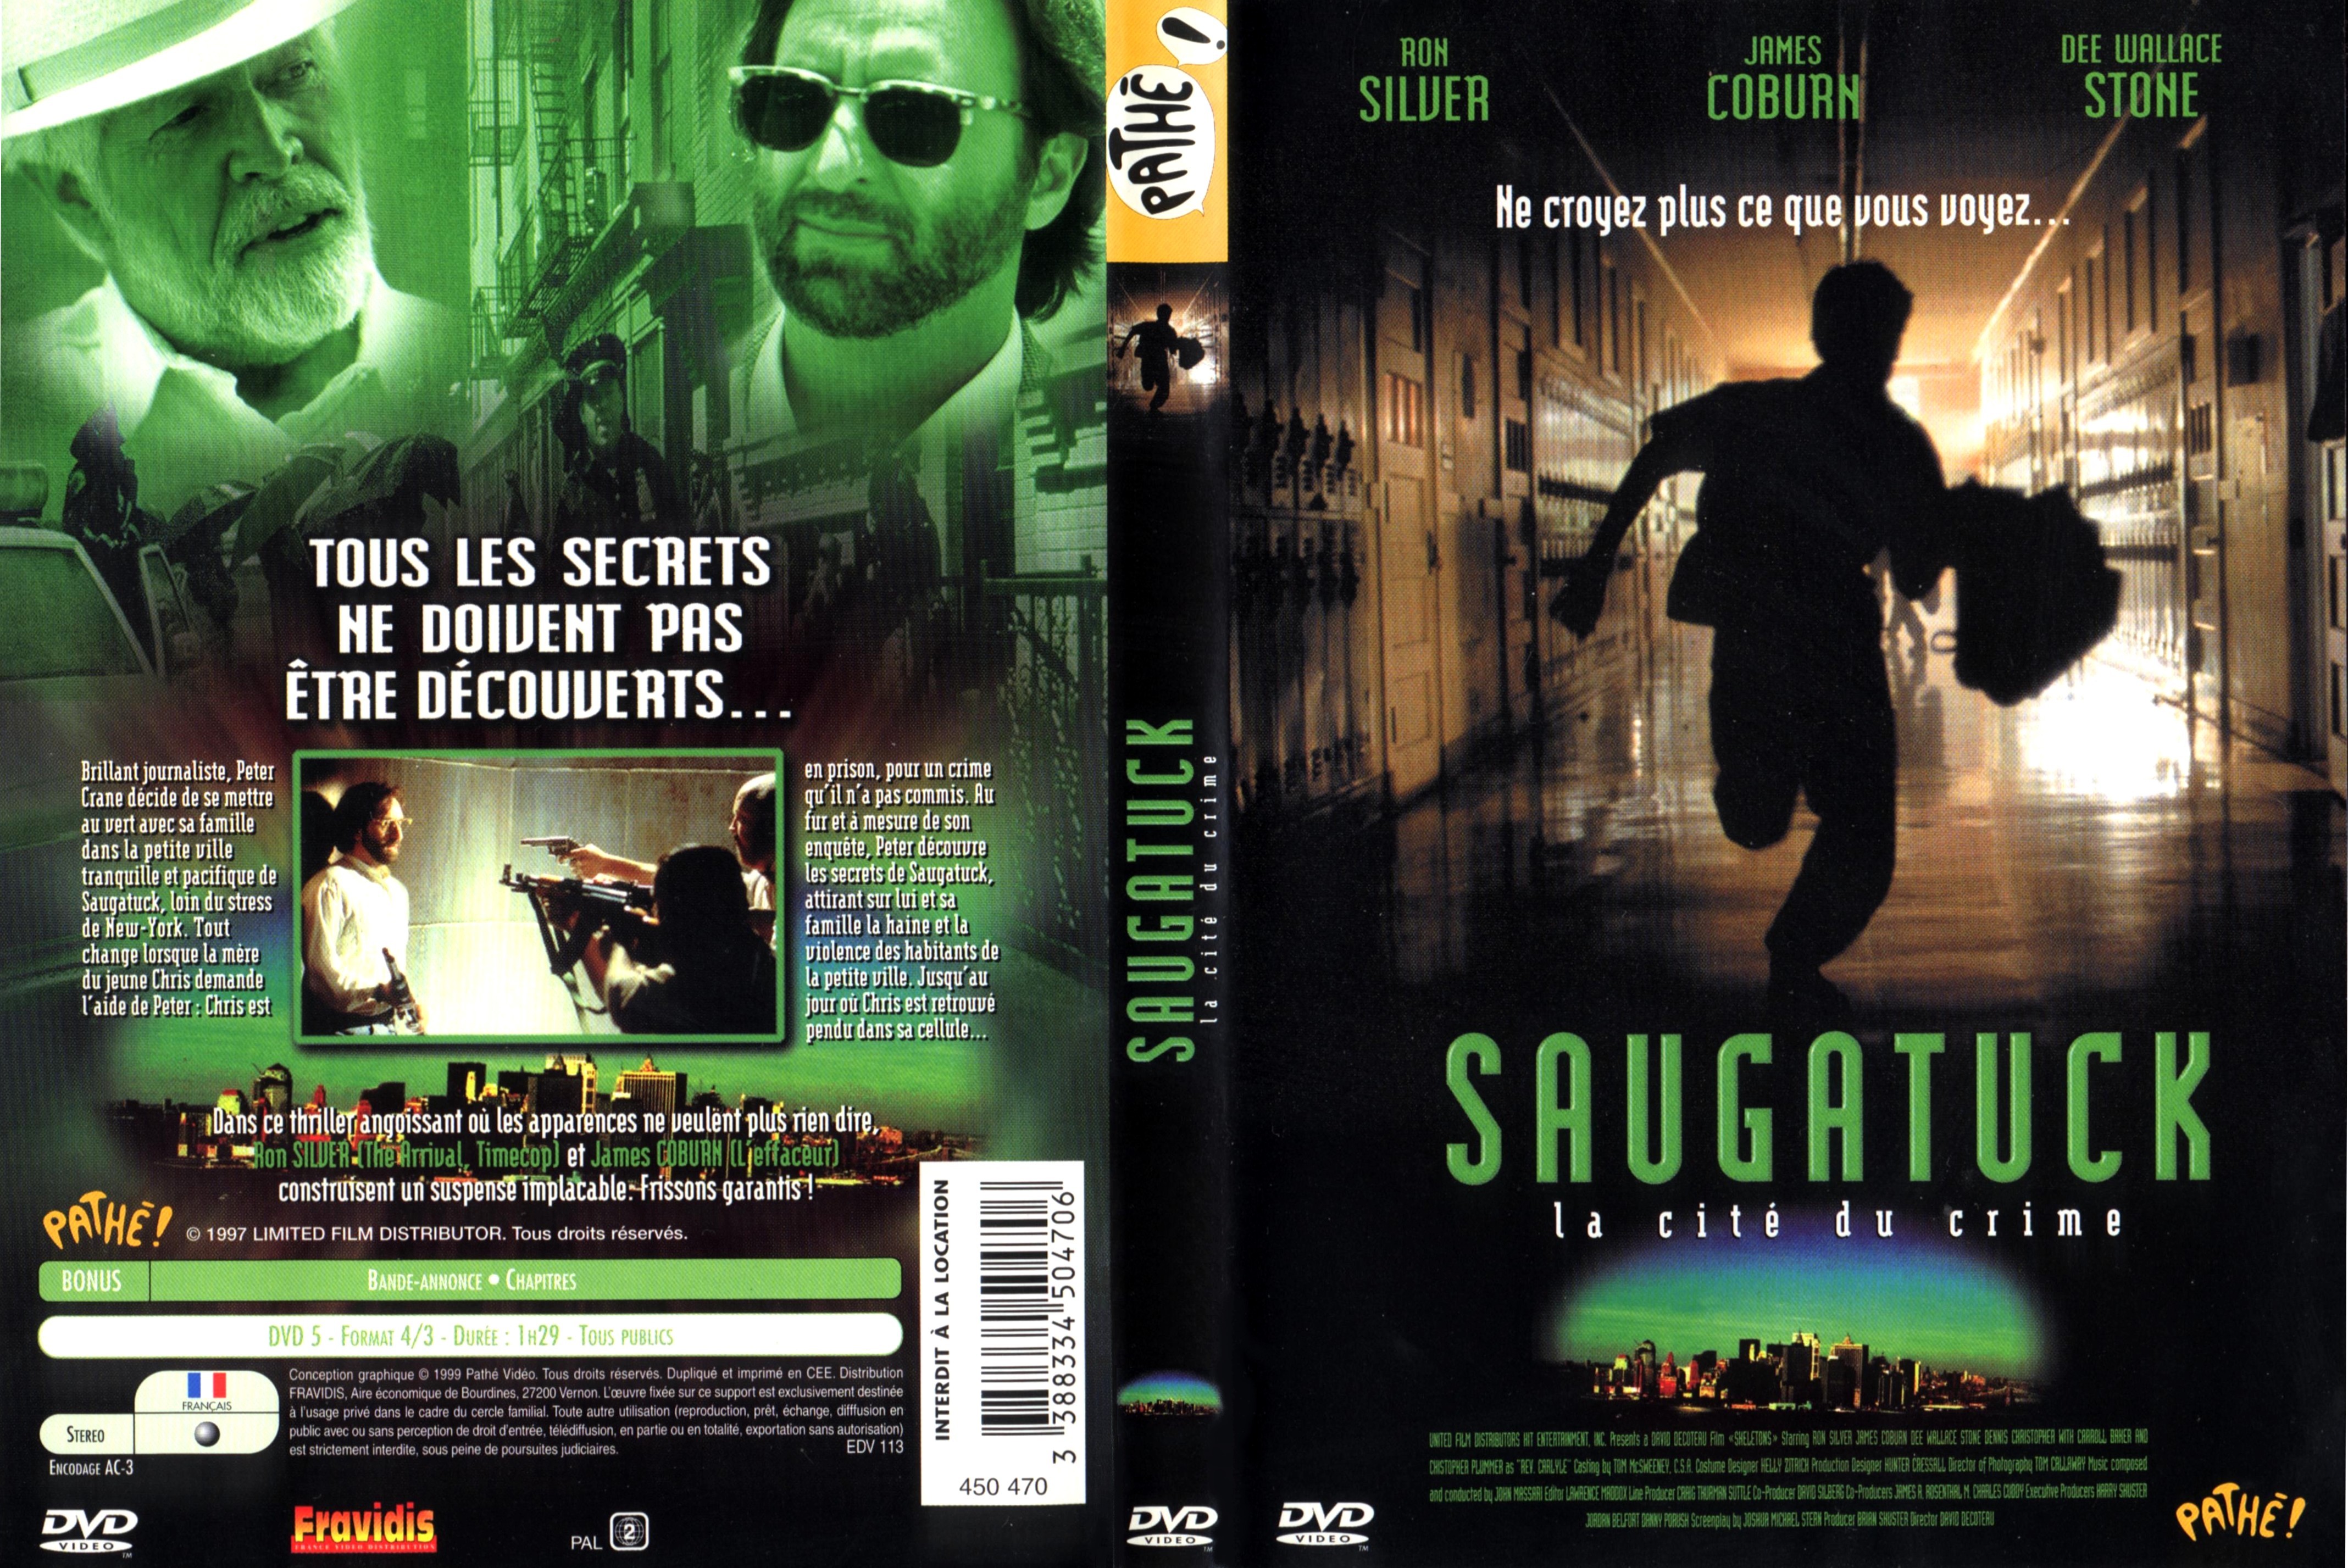 Jaquette DVD Saugatuck